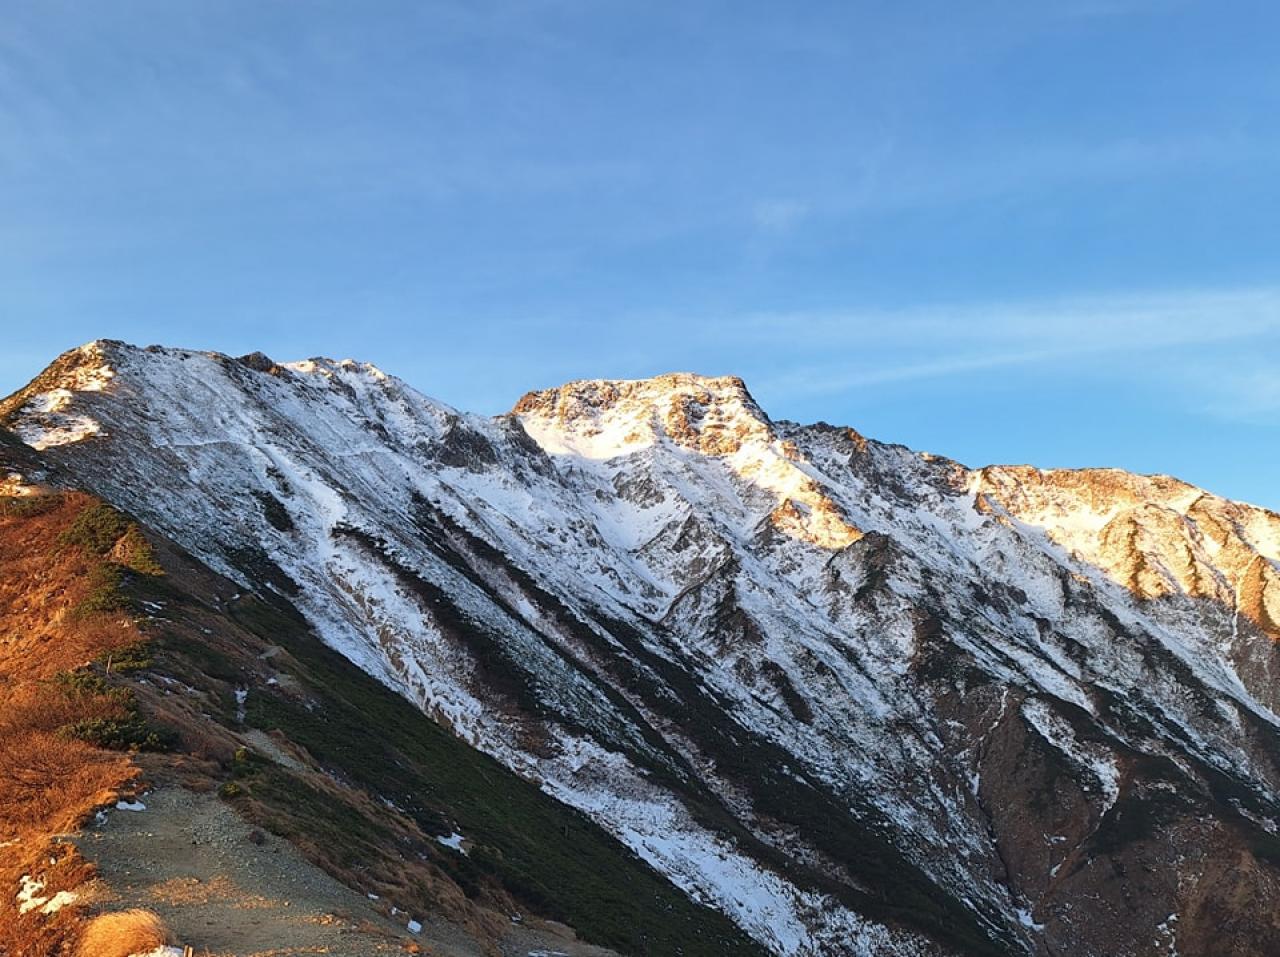 今朝の五竜岳。岩場には凍結や積雪があります。小屋営業は10/21迄。明日以降天気下り坂。小屋営業日としては最後の青空になりそうです